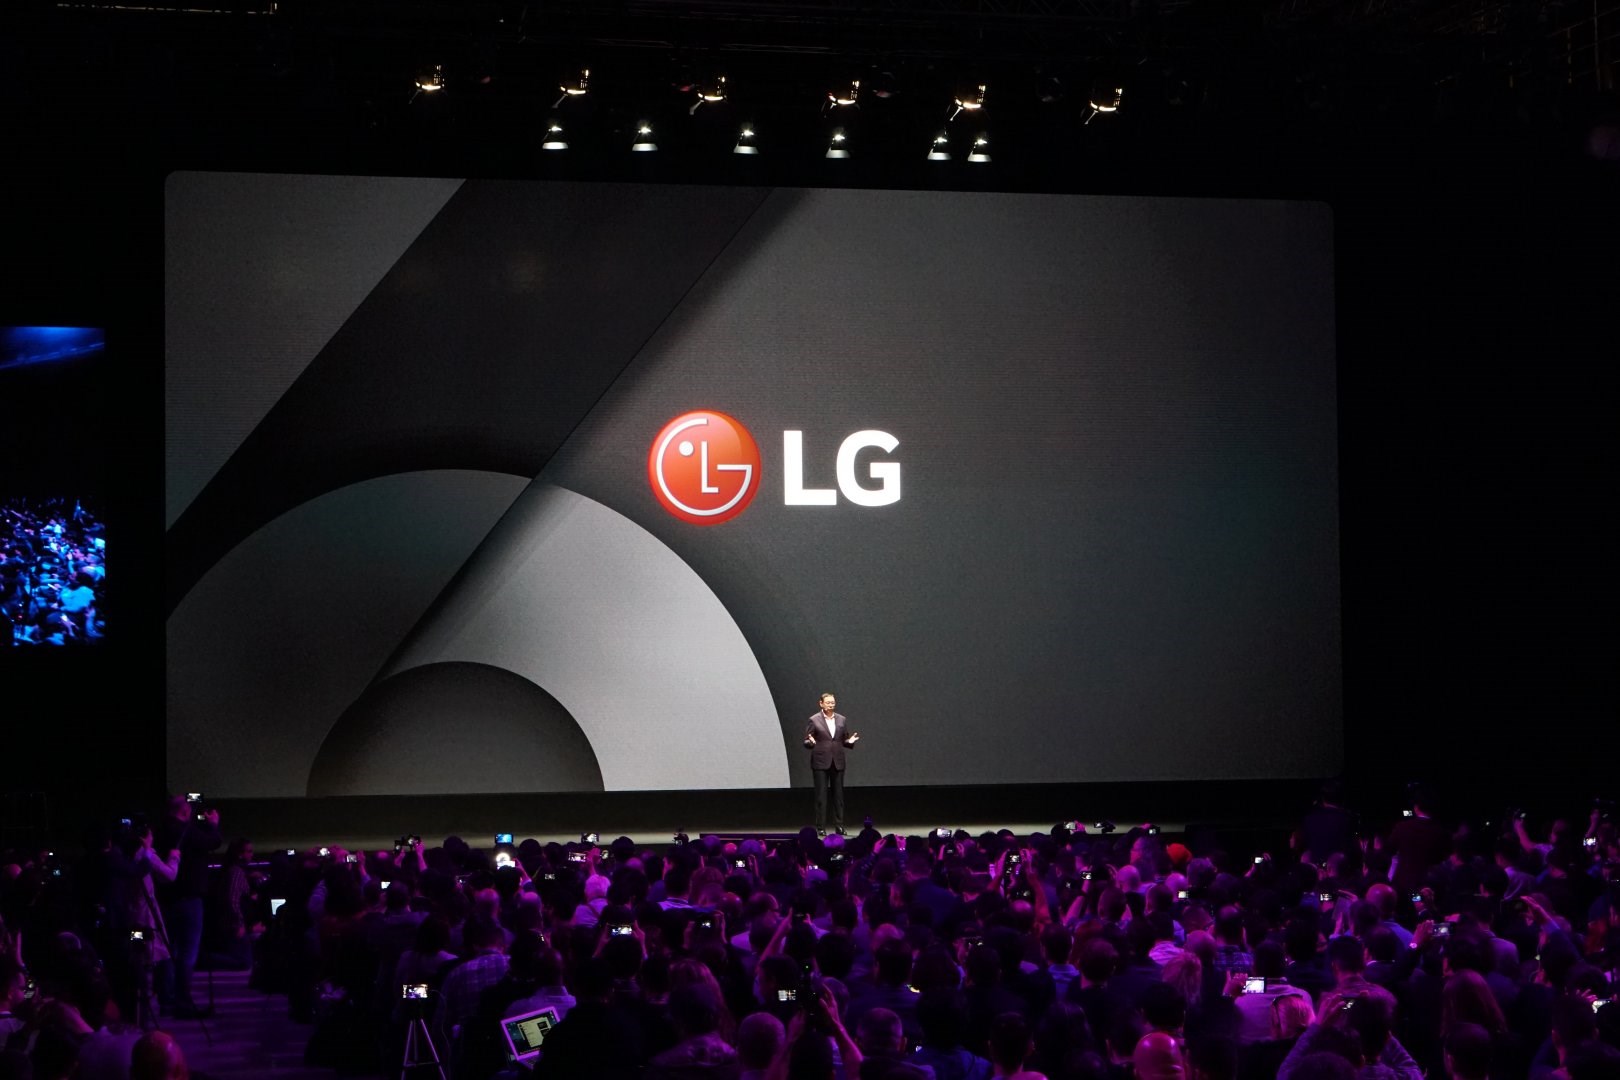 LG, 13 yeni Q serisi cihaz için marka başvurusu yaptı